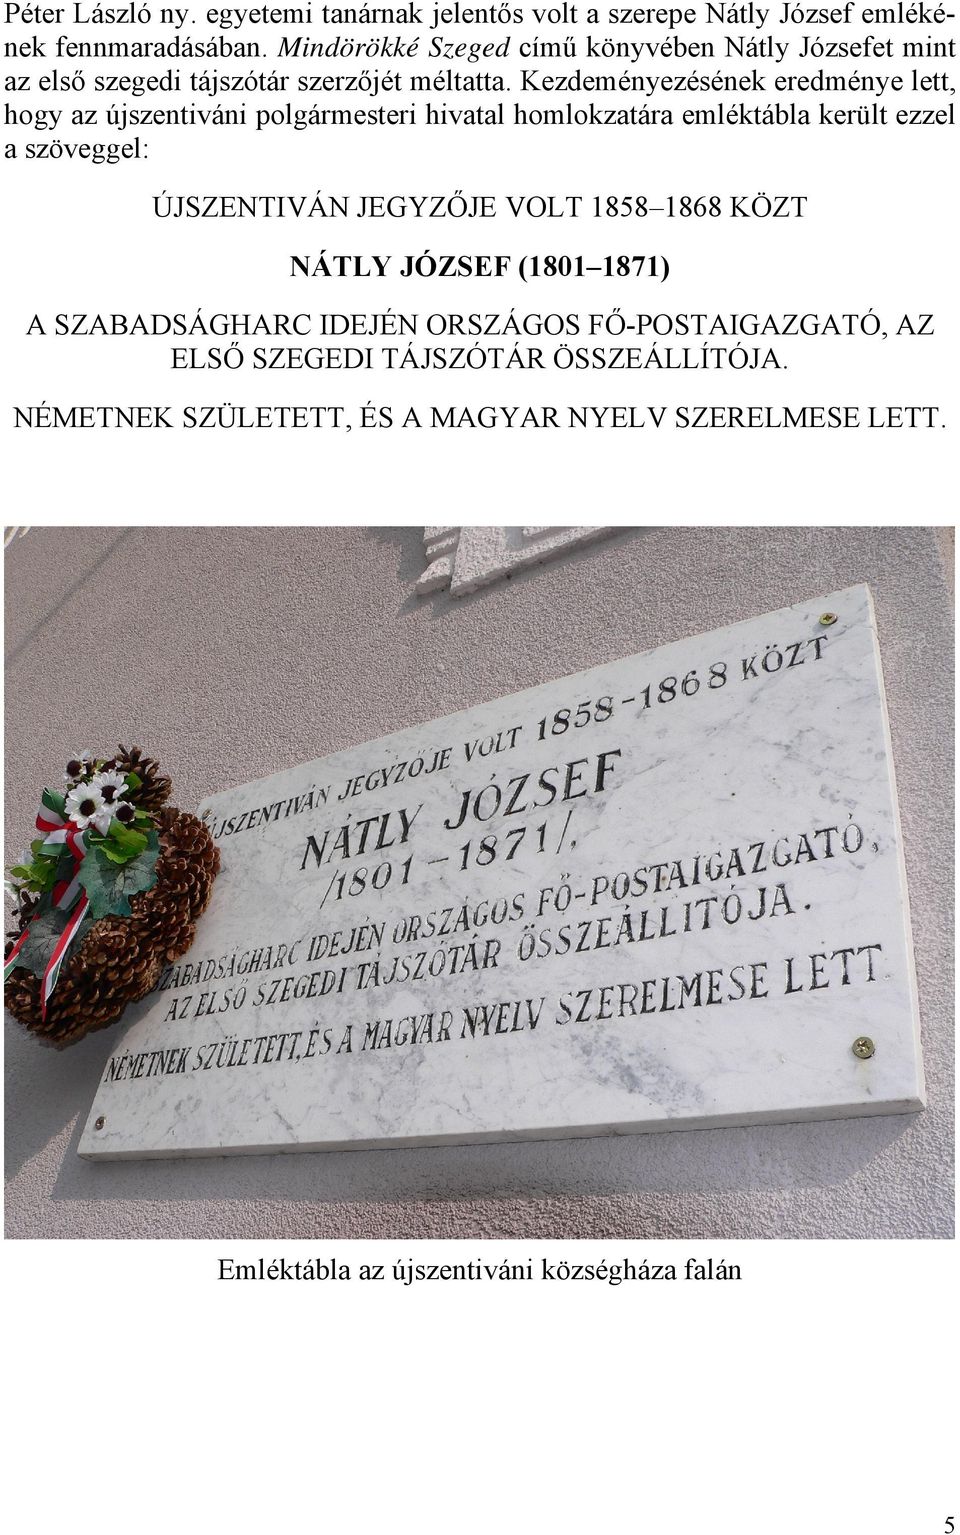 Kezdeményezésének eredménye lett, hogy az újszentiváni polgármesteri hivatal homlokzatára emléktábla került ezzel a szöveggel: ÚJSZENTIVÁN